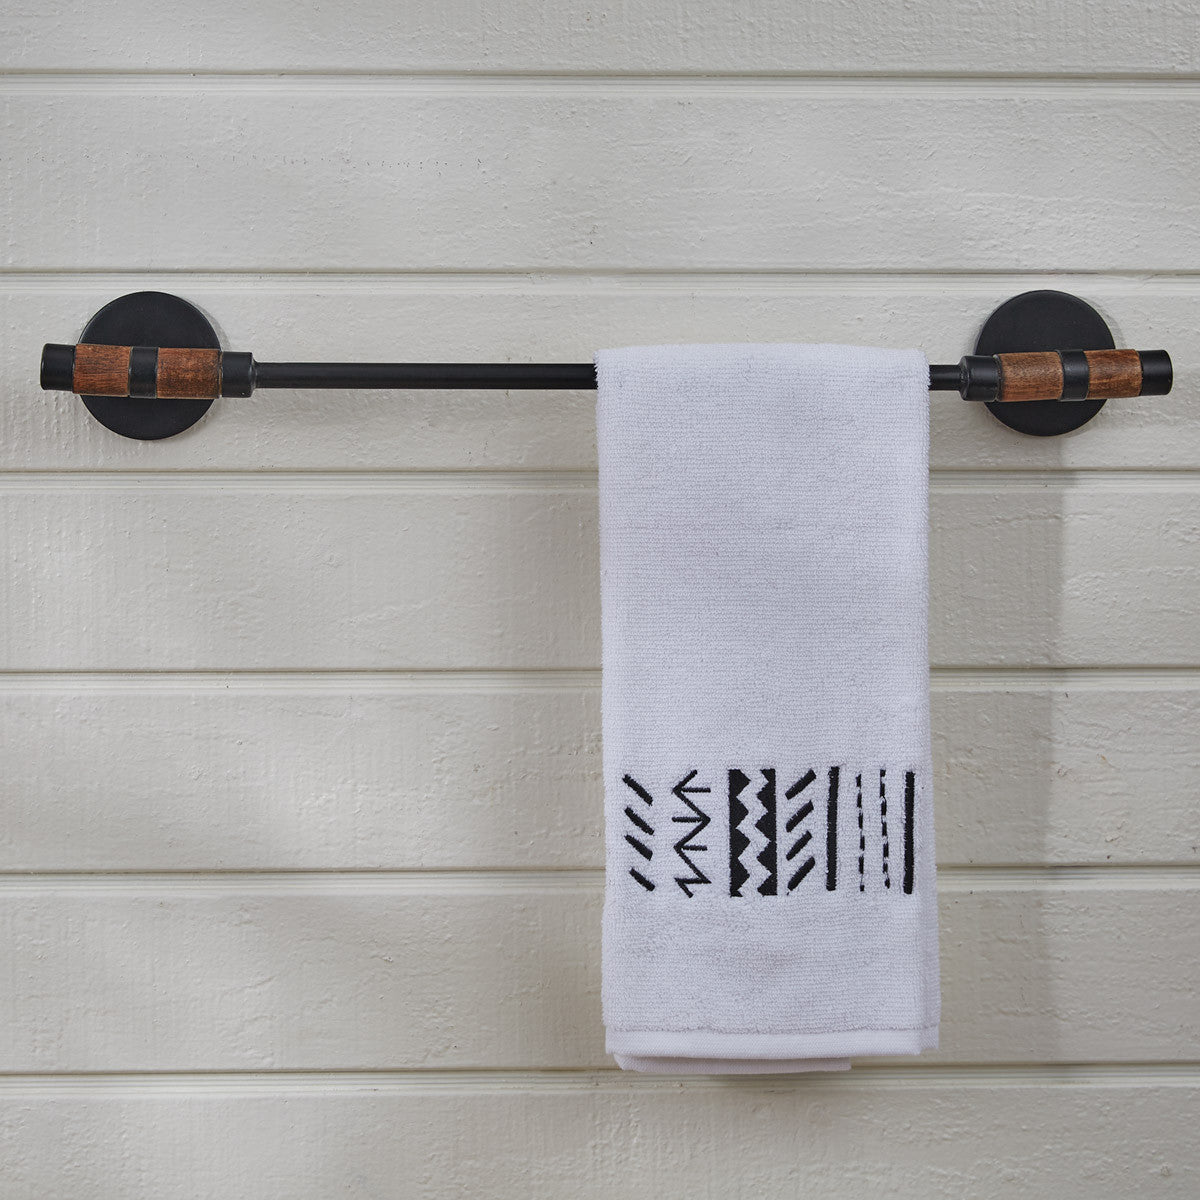 Urban Farmhouse Towel Bar 18" - Park Designs